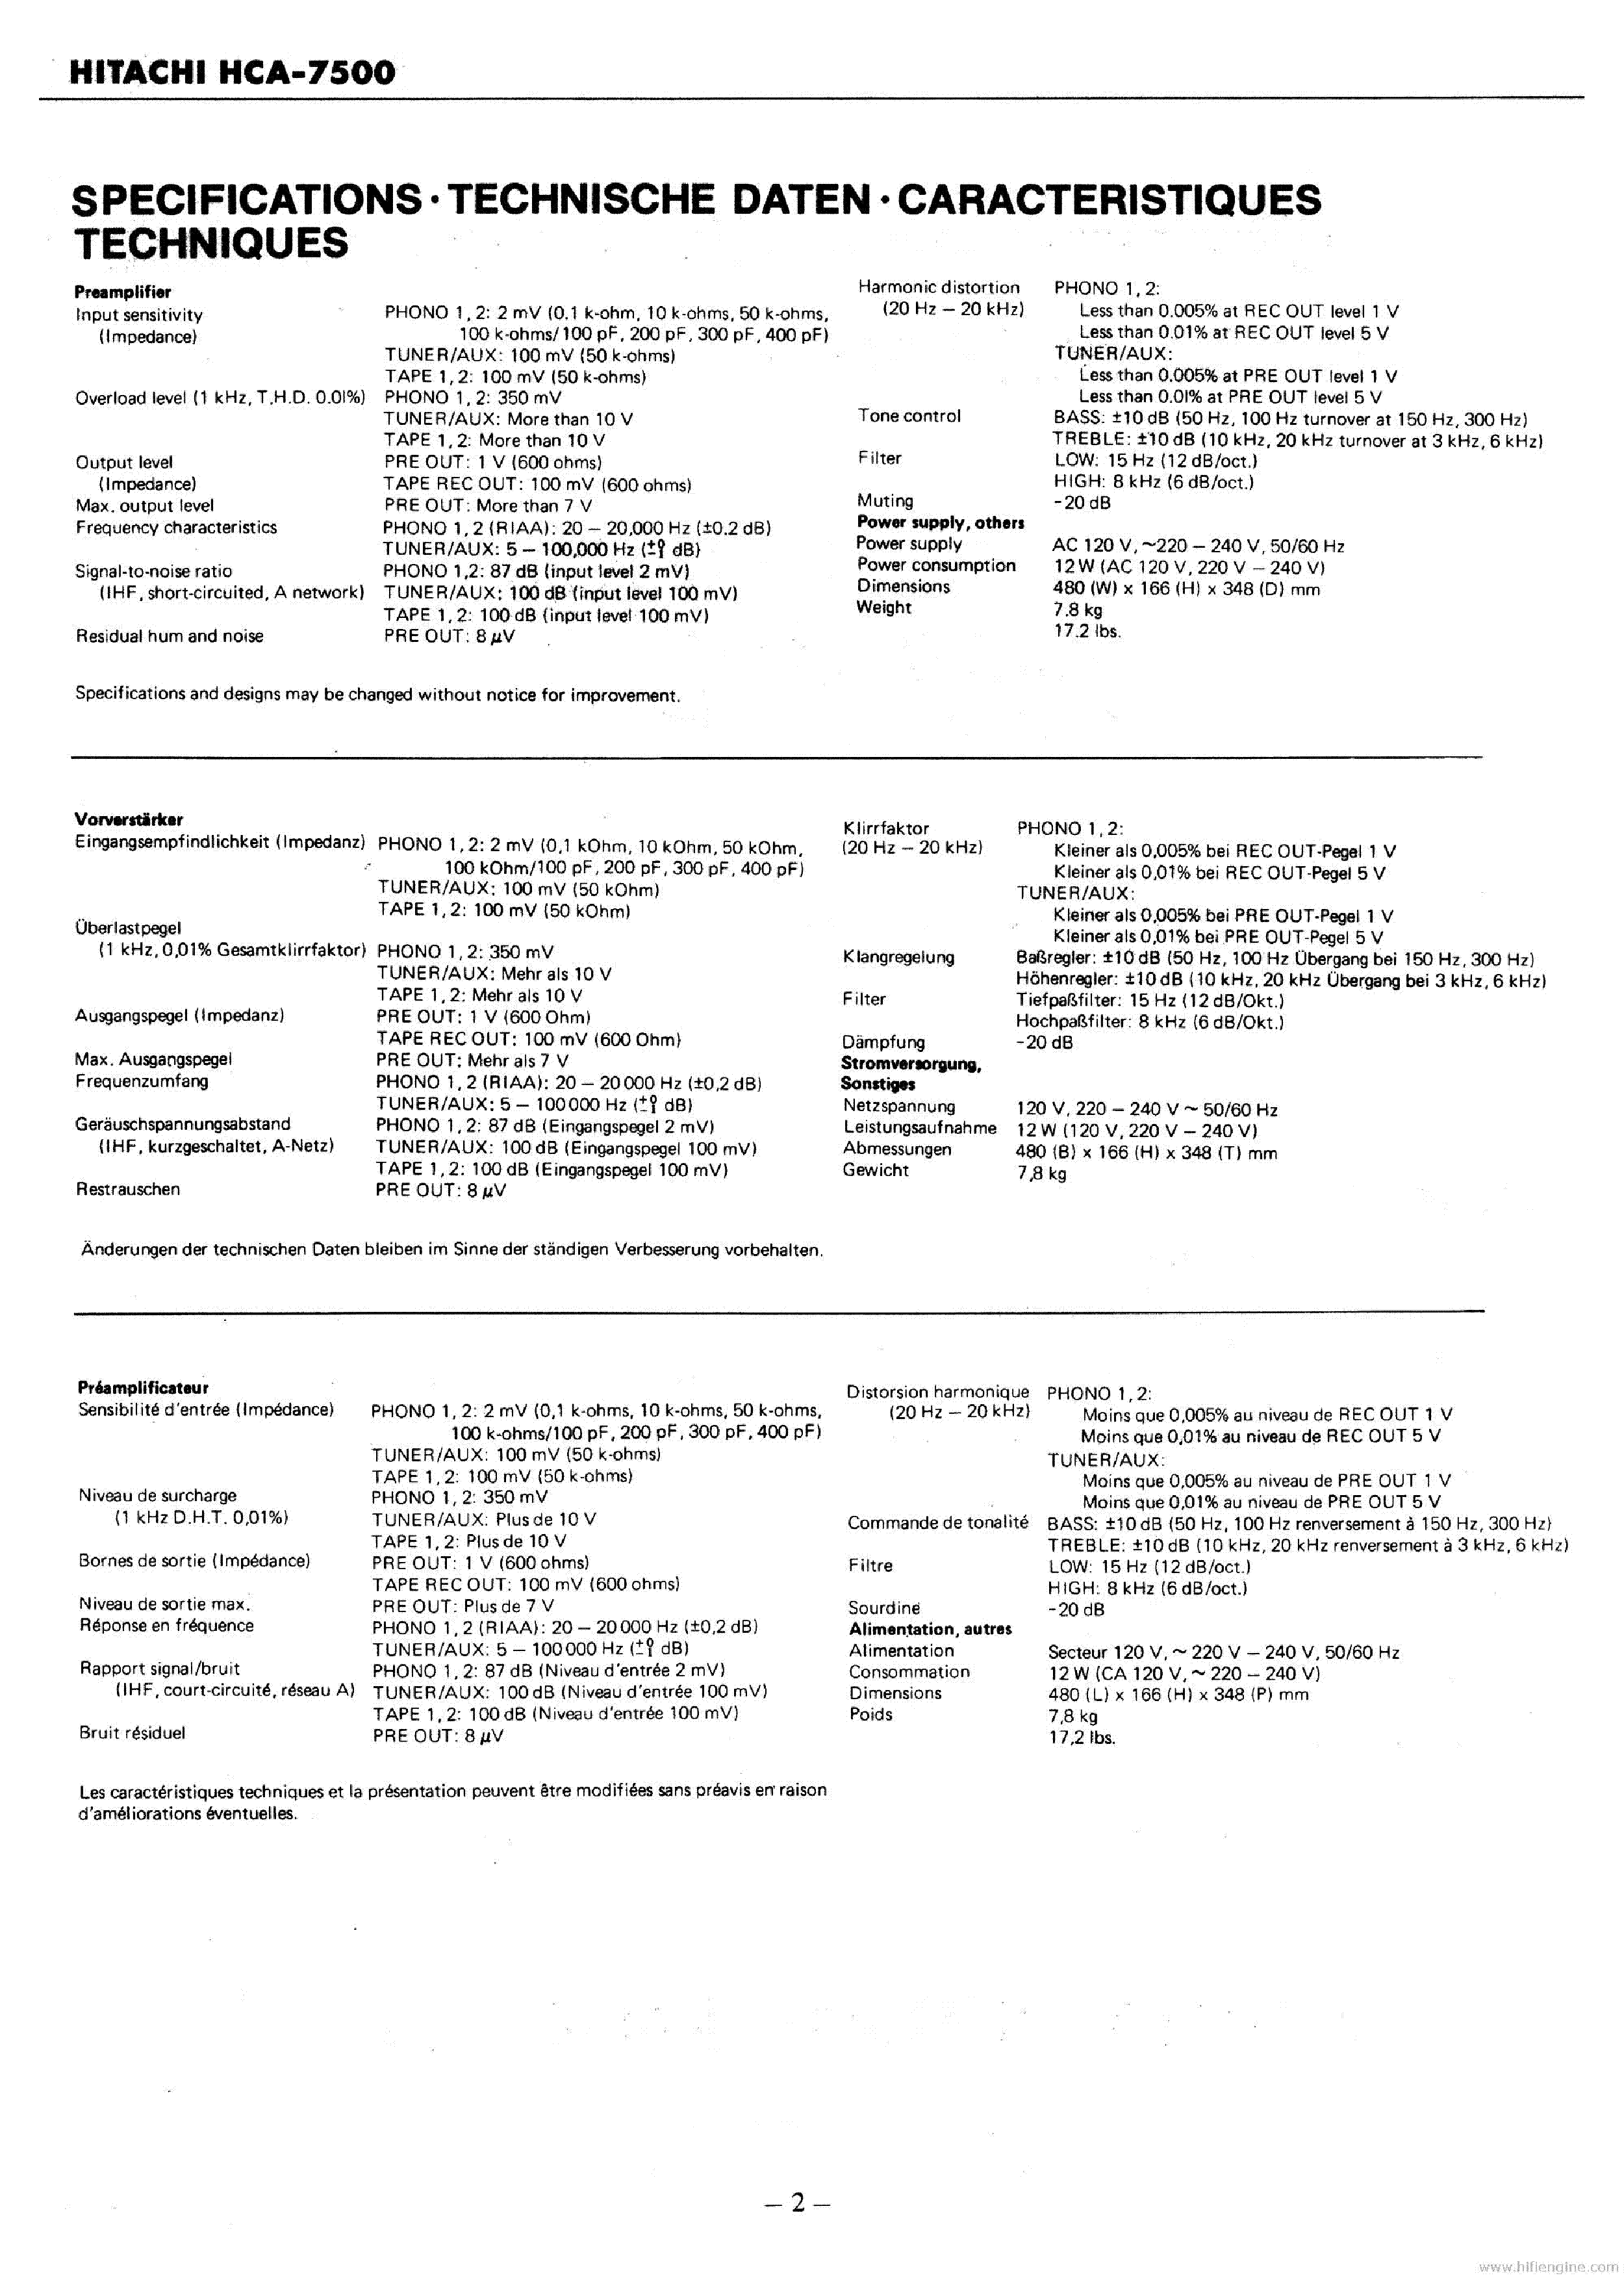 HITACHI HCA-7500 service manual (2nd page)